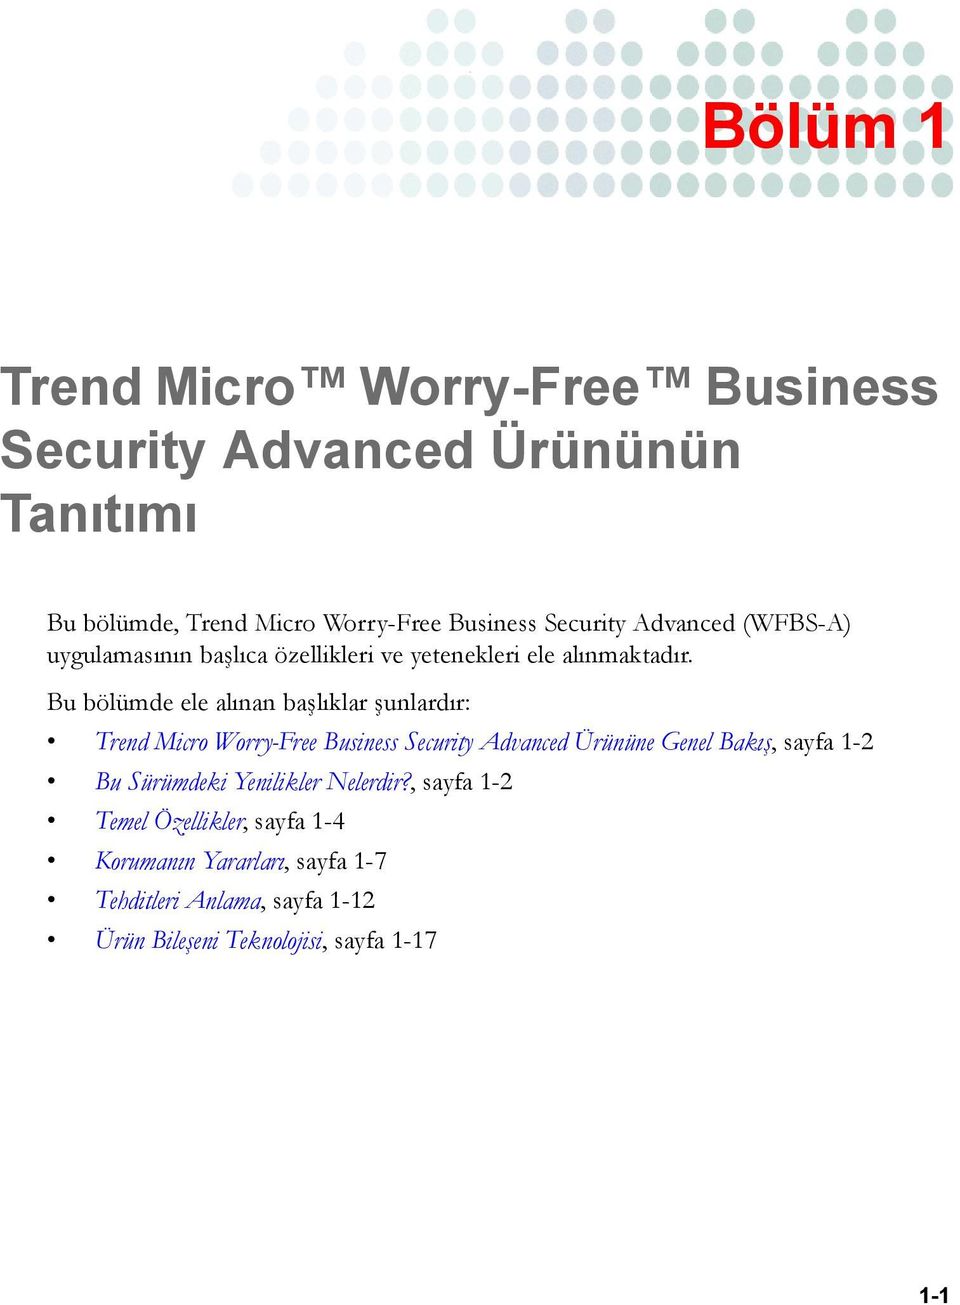 Bu bölümde ele alınan başlıklar şunlardır: Trend Micro Worry-Free Business Security Advanced Ürününe Genel Bakış, sayfa 1-2 Bu